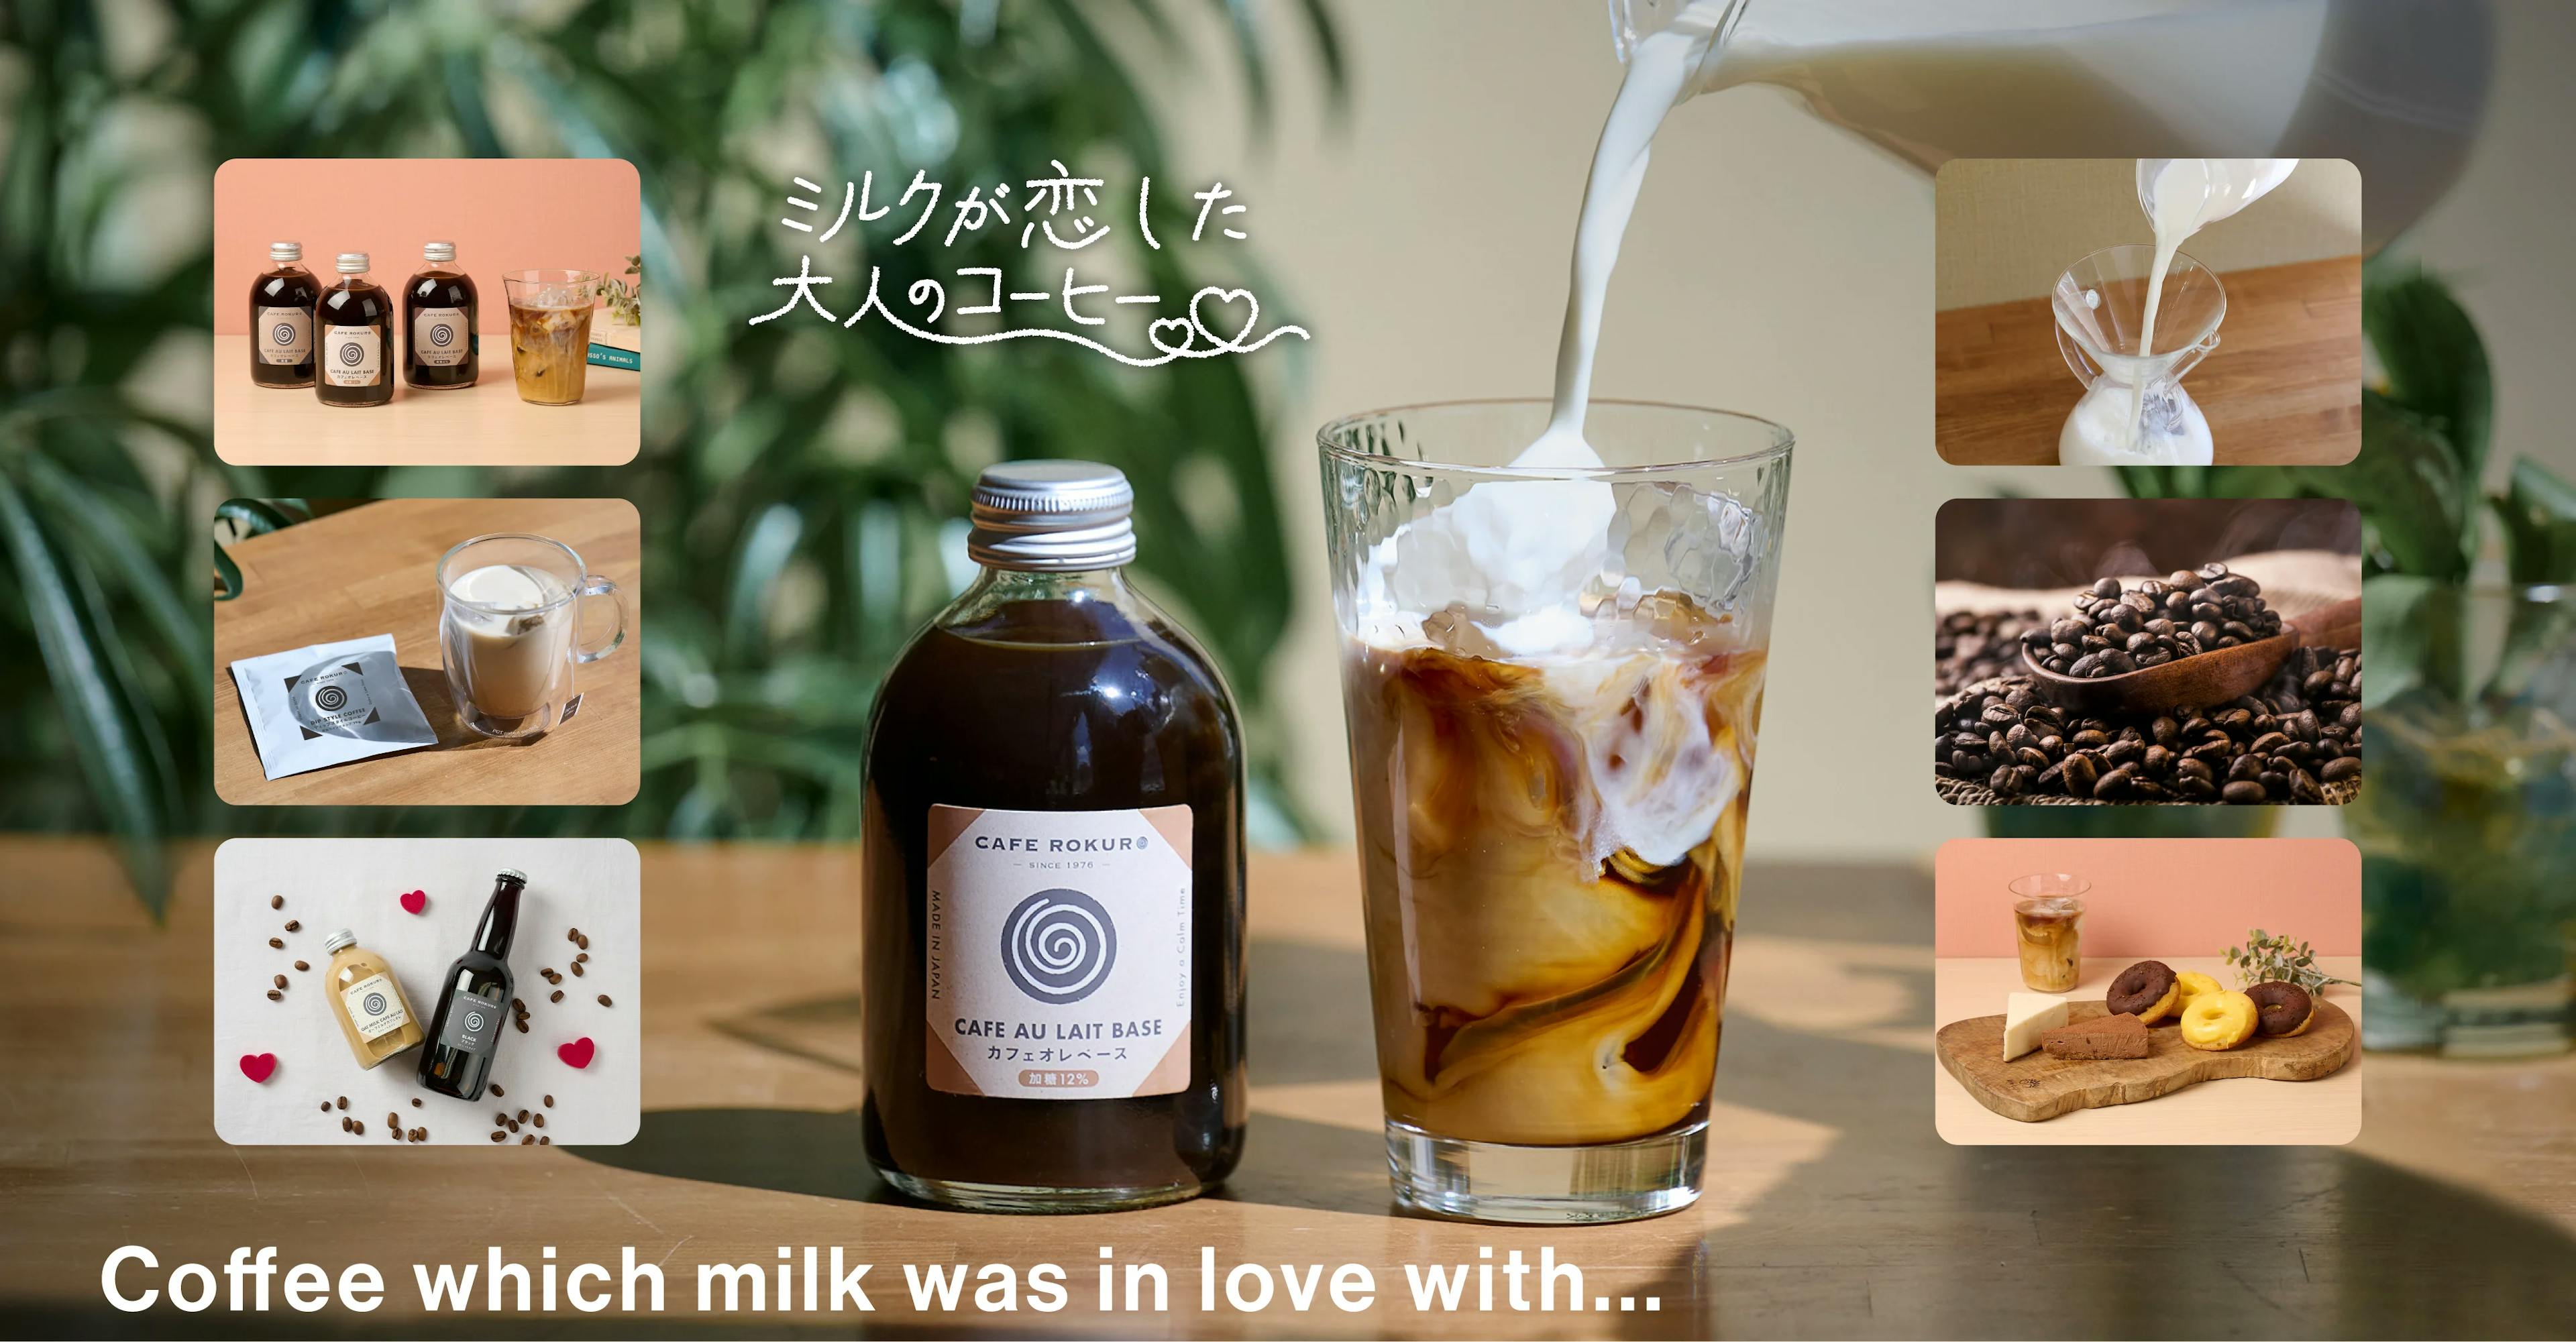 創業47年の老舗「カフェ呂久呂」がプライベートブランドを展開。コクと深み溢れるカフェオレベース『ミルクが恋した大人のコーヒー』